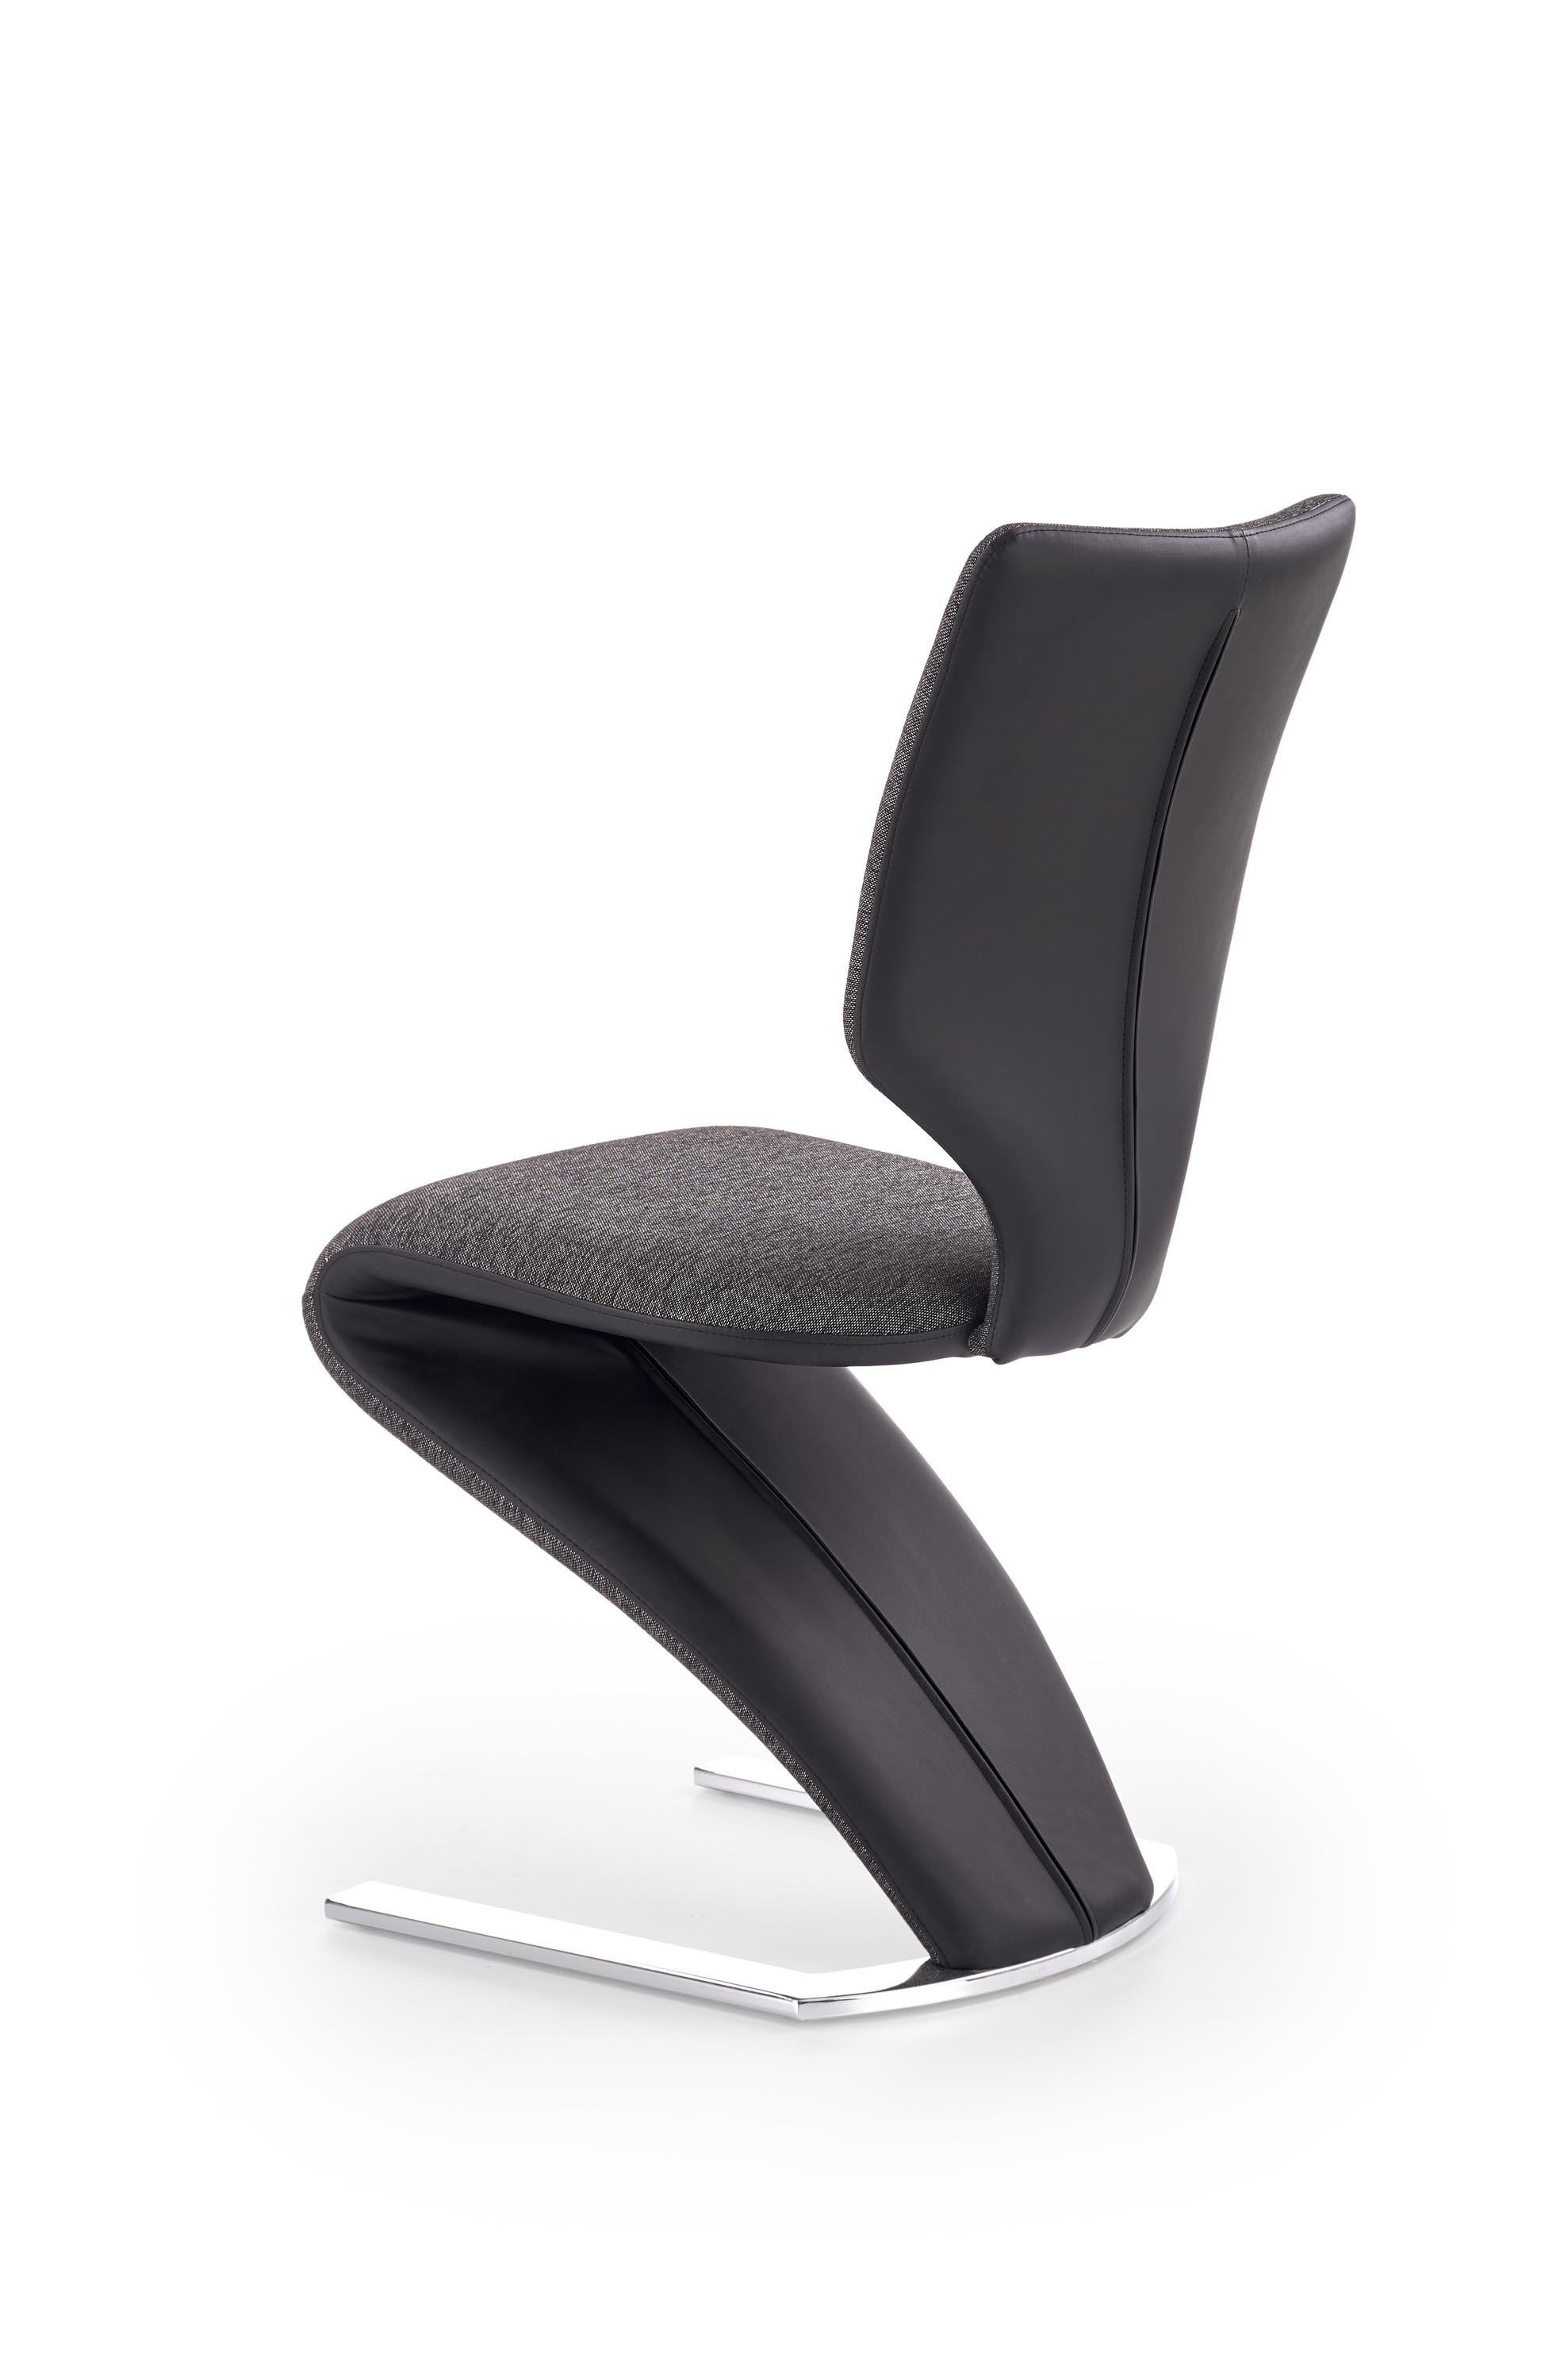 Čalouněná židle K307 - černá / tmavý popel Židle čalouněné k307 - Černý / tmavý popel